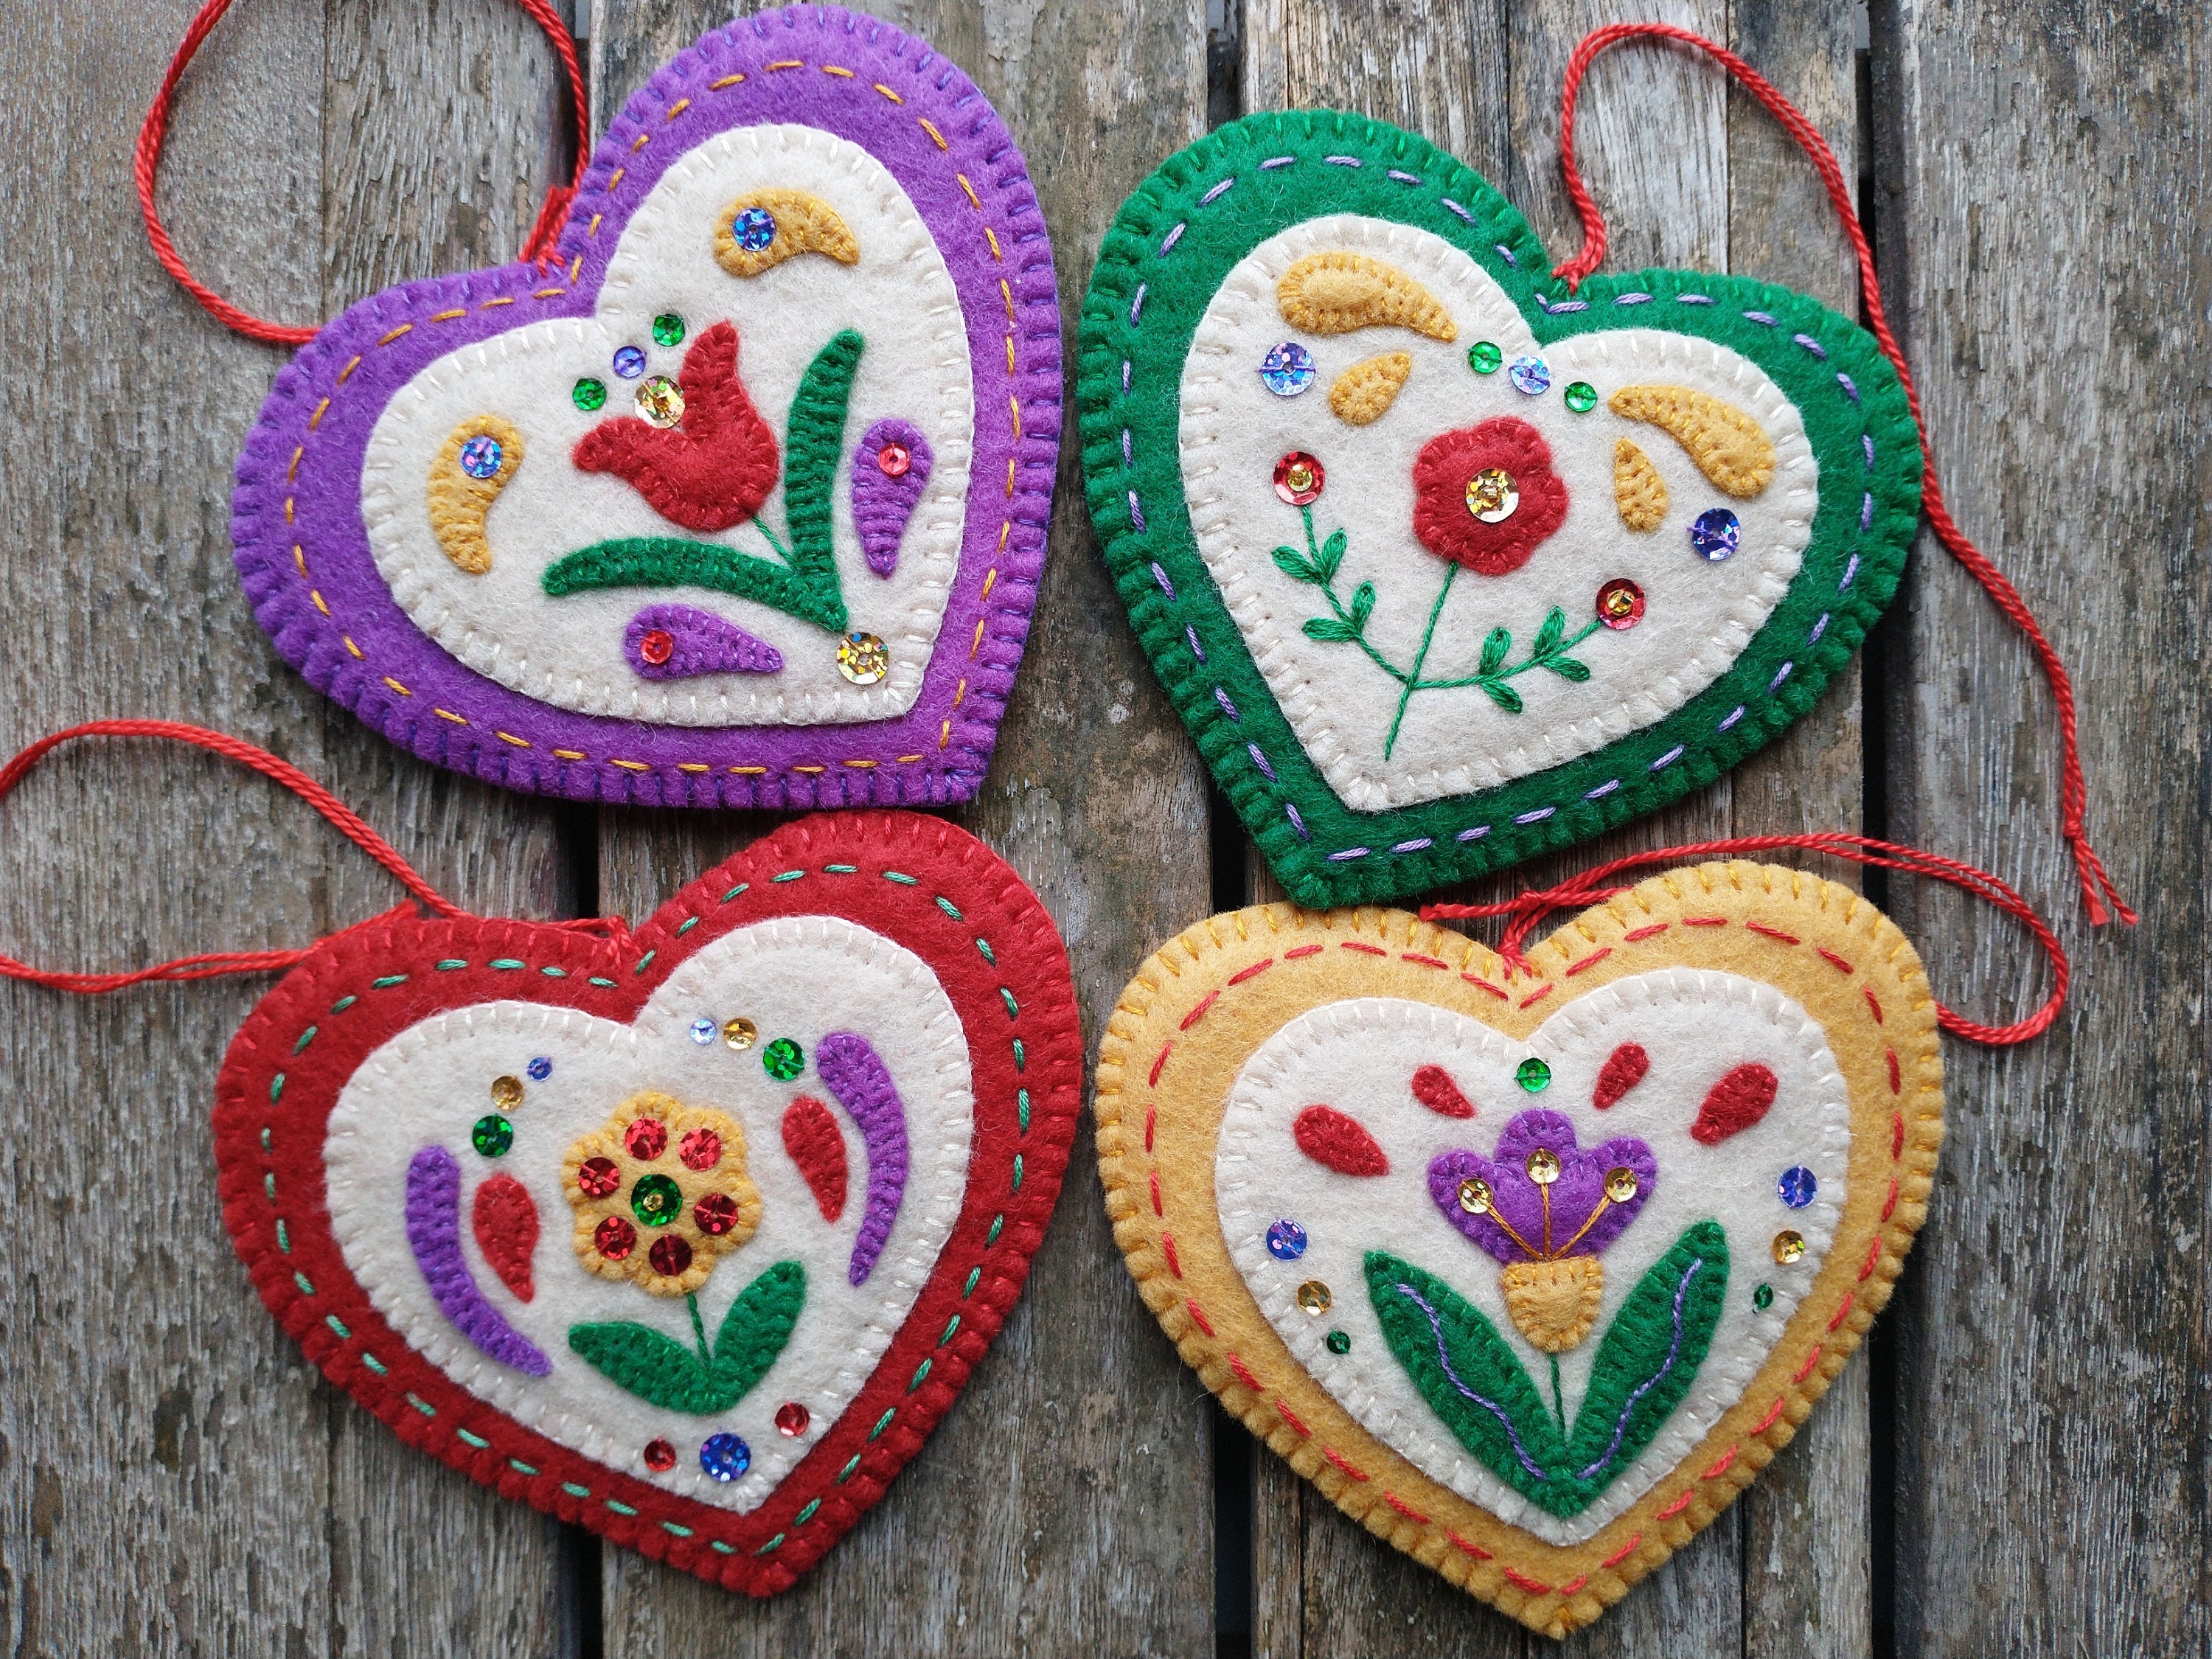 Scandinavian Heart Sticker — Scandinavian Hearts